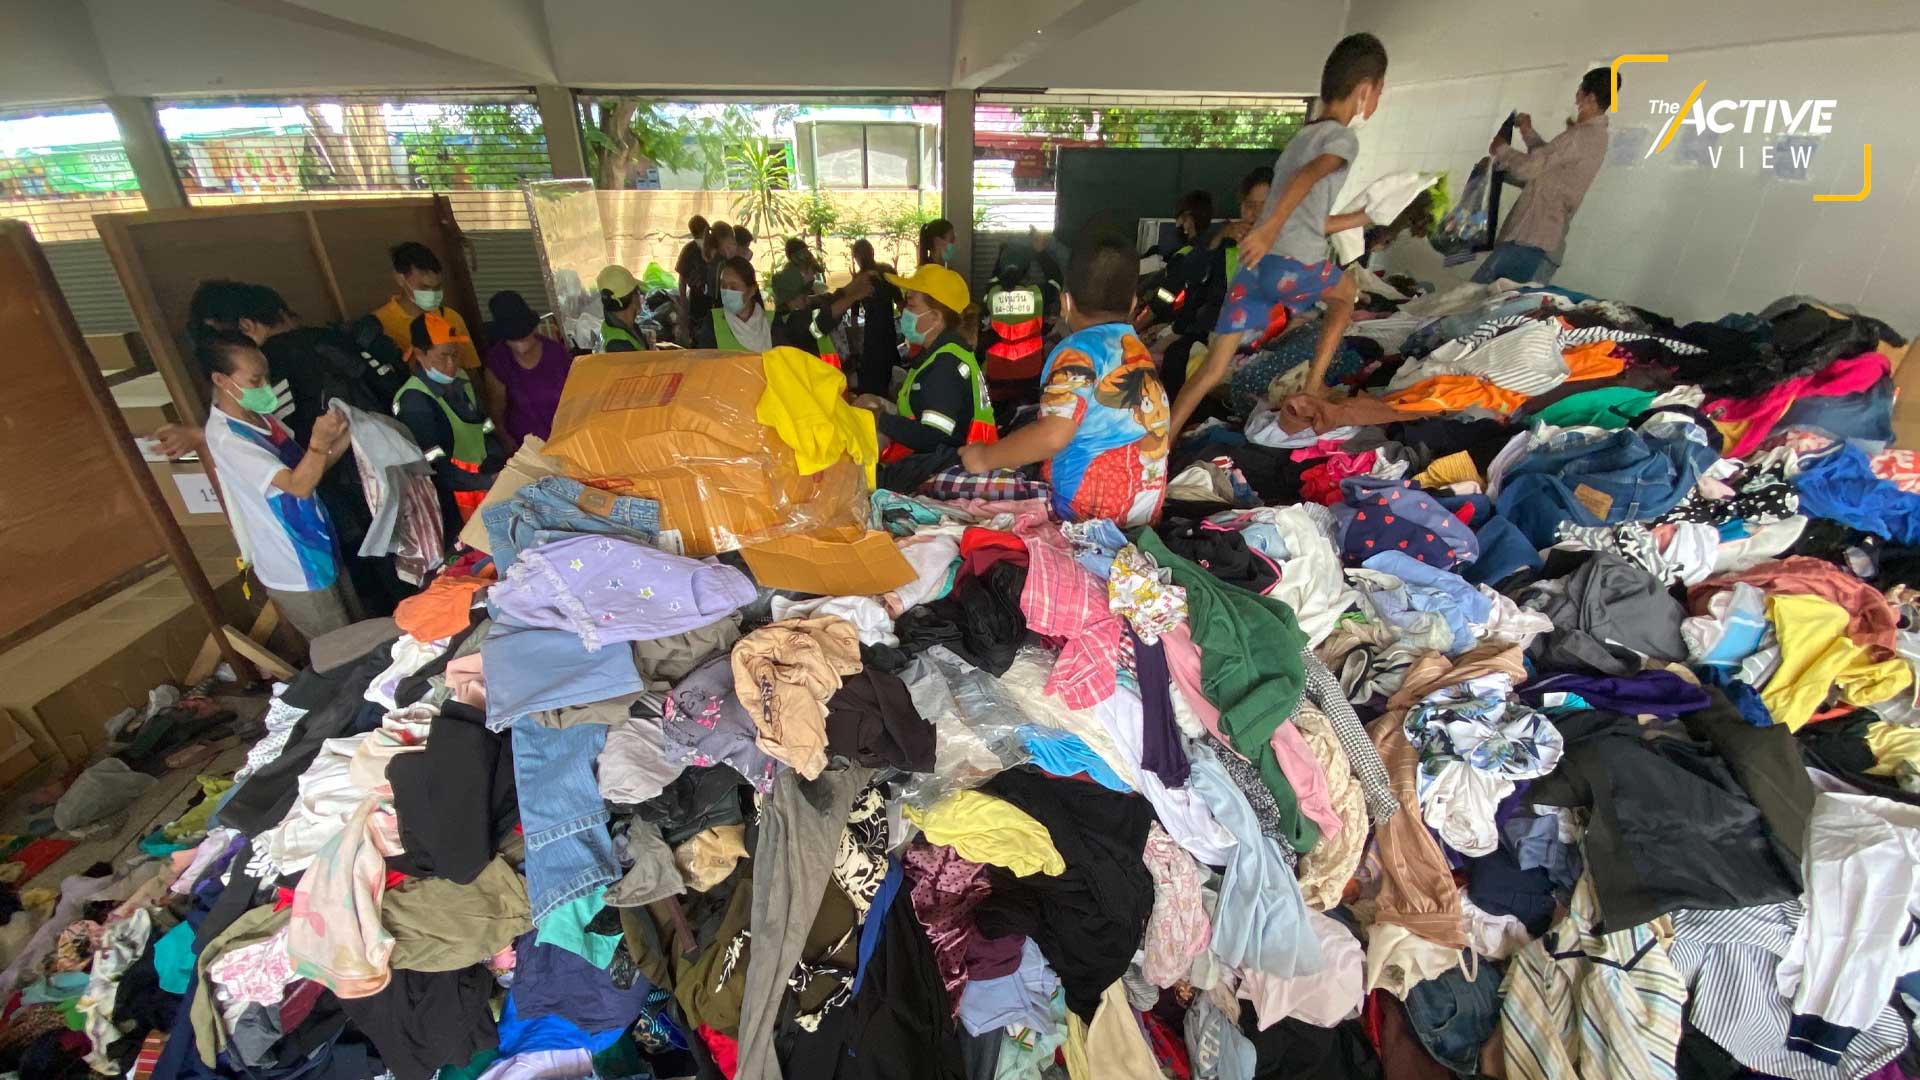 เสื้อผ้าจำนวนมาก จากผู้บริจาค ถูกนำมากองรวมกันไว้ใต้อาคารเรือนนอน รอส่งต่อให้กับผู้ประสบภัย และกระจายไปยังพื้นที่ที่มีความต้องการต่อไป